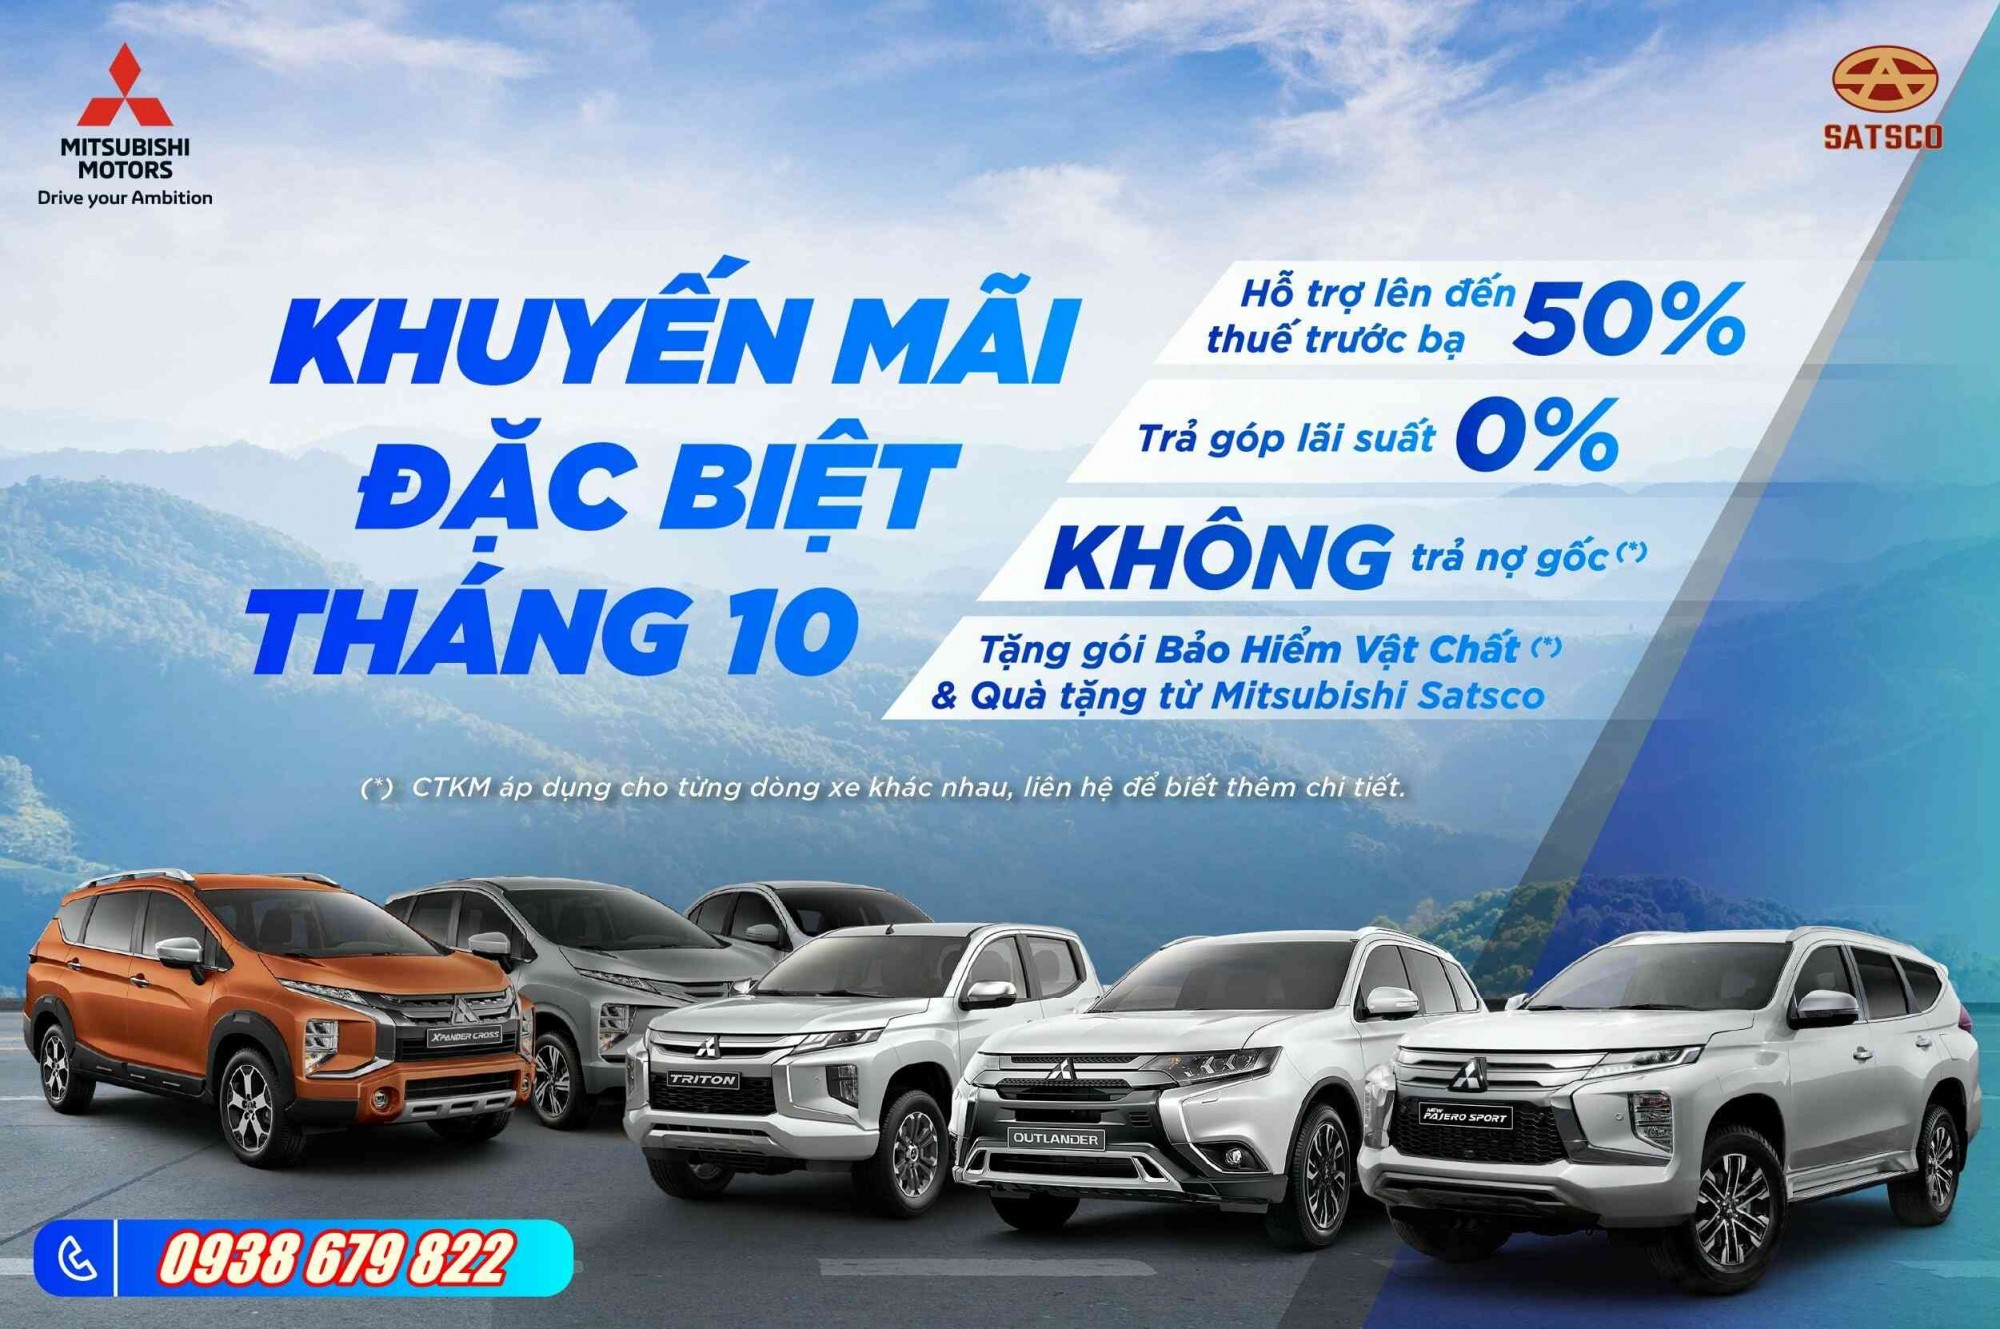 Mitsubishi nhá hàng xe SUV mới tại Việt Nam cạnh tranh Hyundai Creta